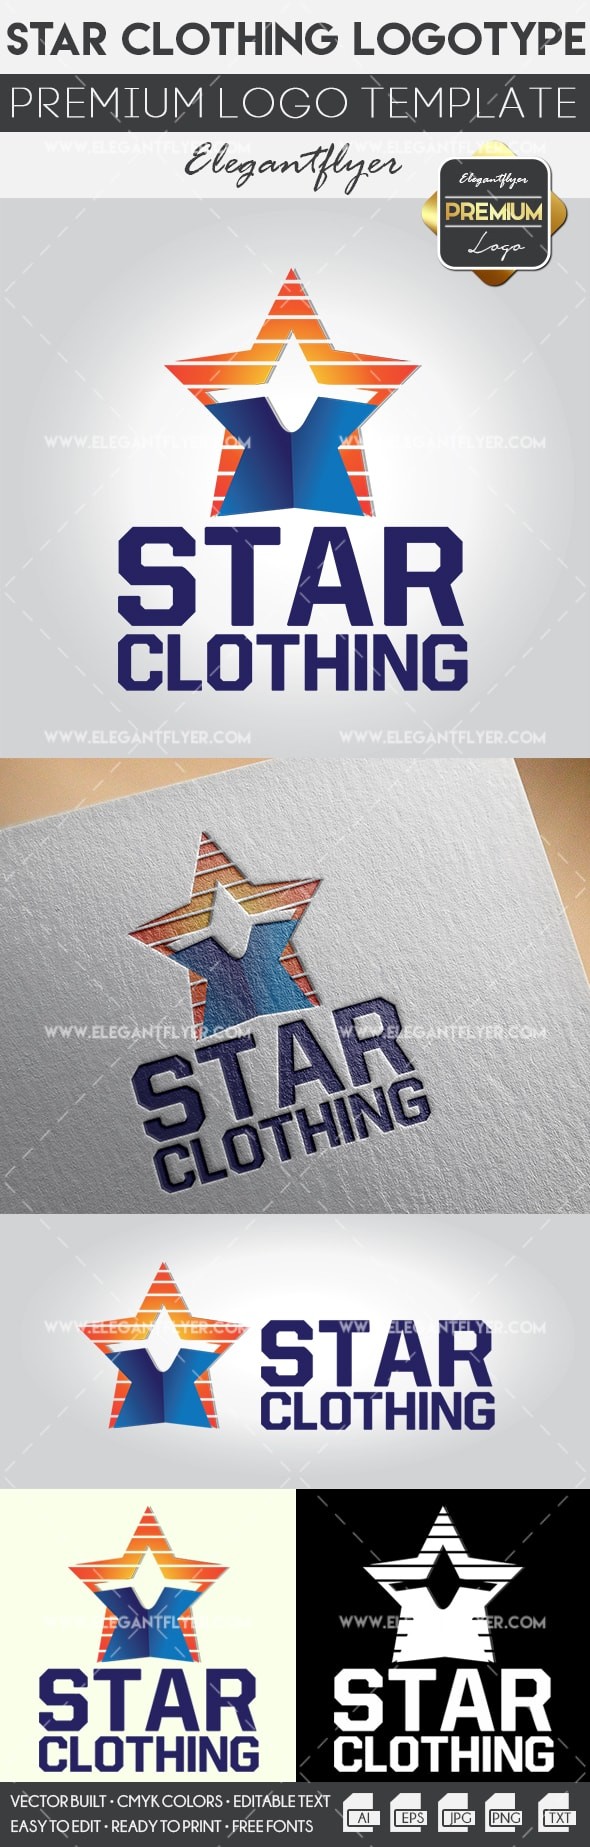 Star Clothing by ElegantFlyer